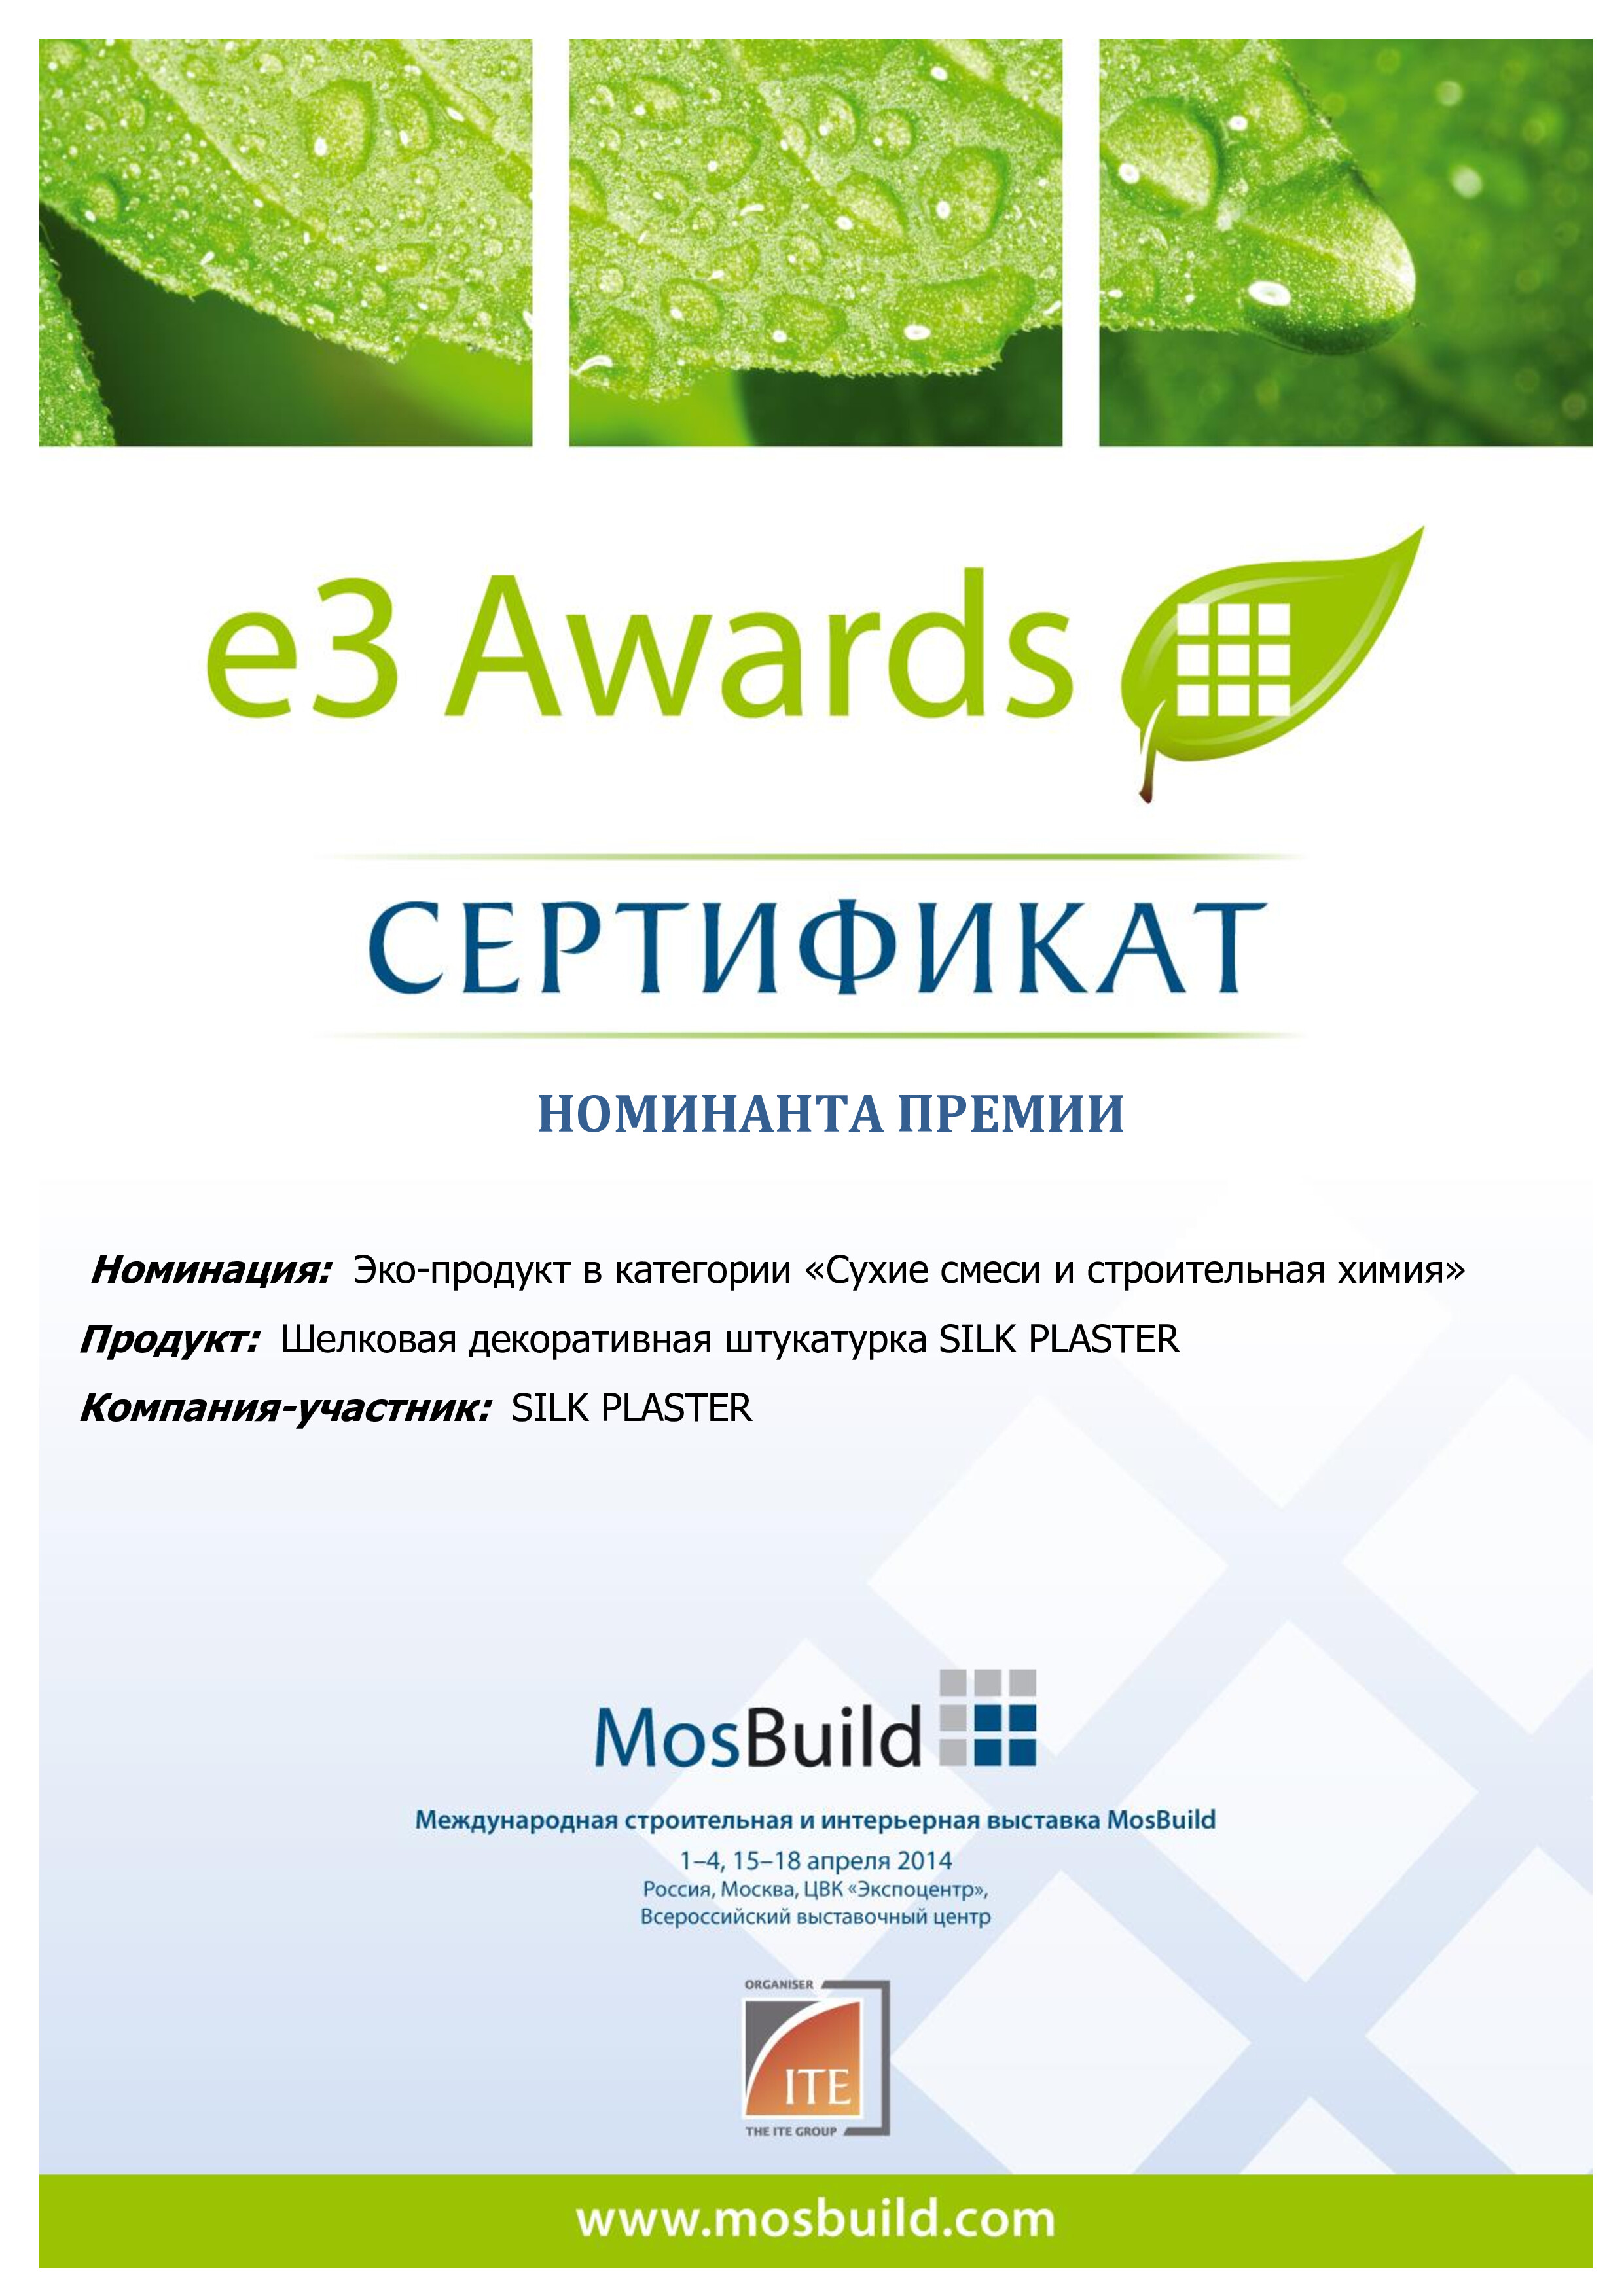 Экологическая премия в области строительных и отделочных материалов e3 Awards